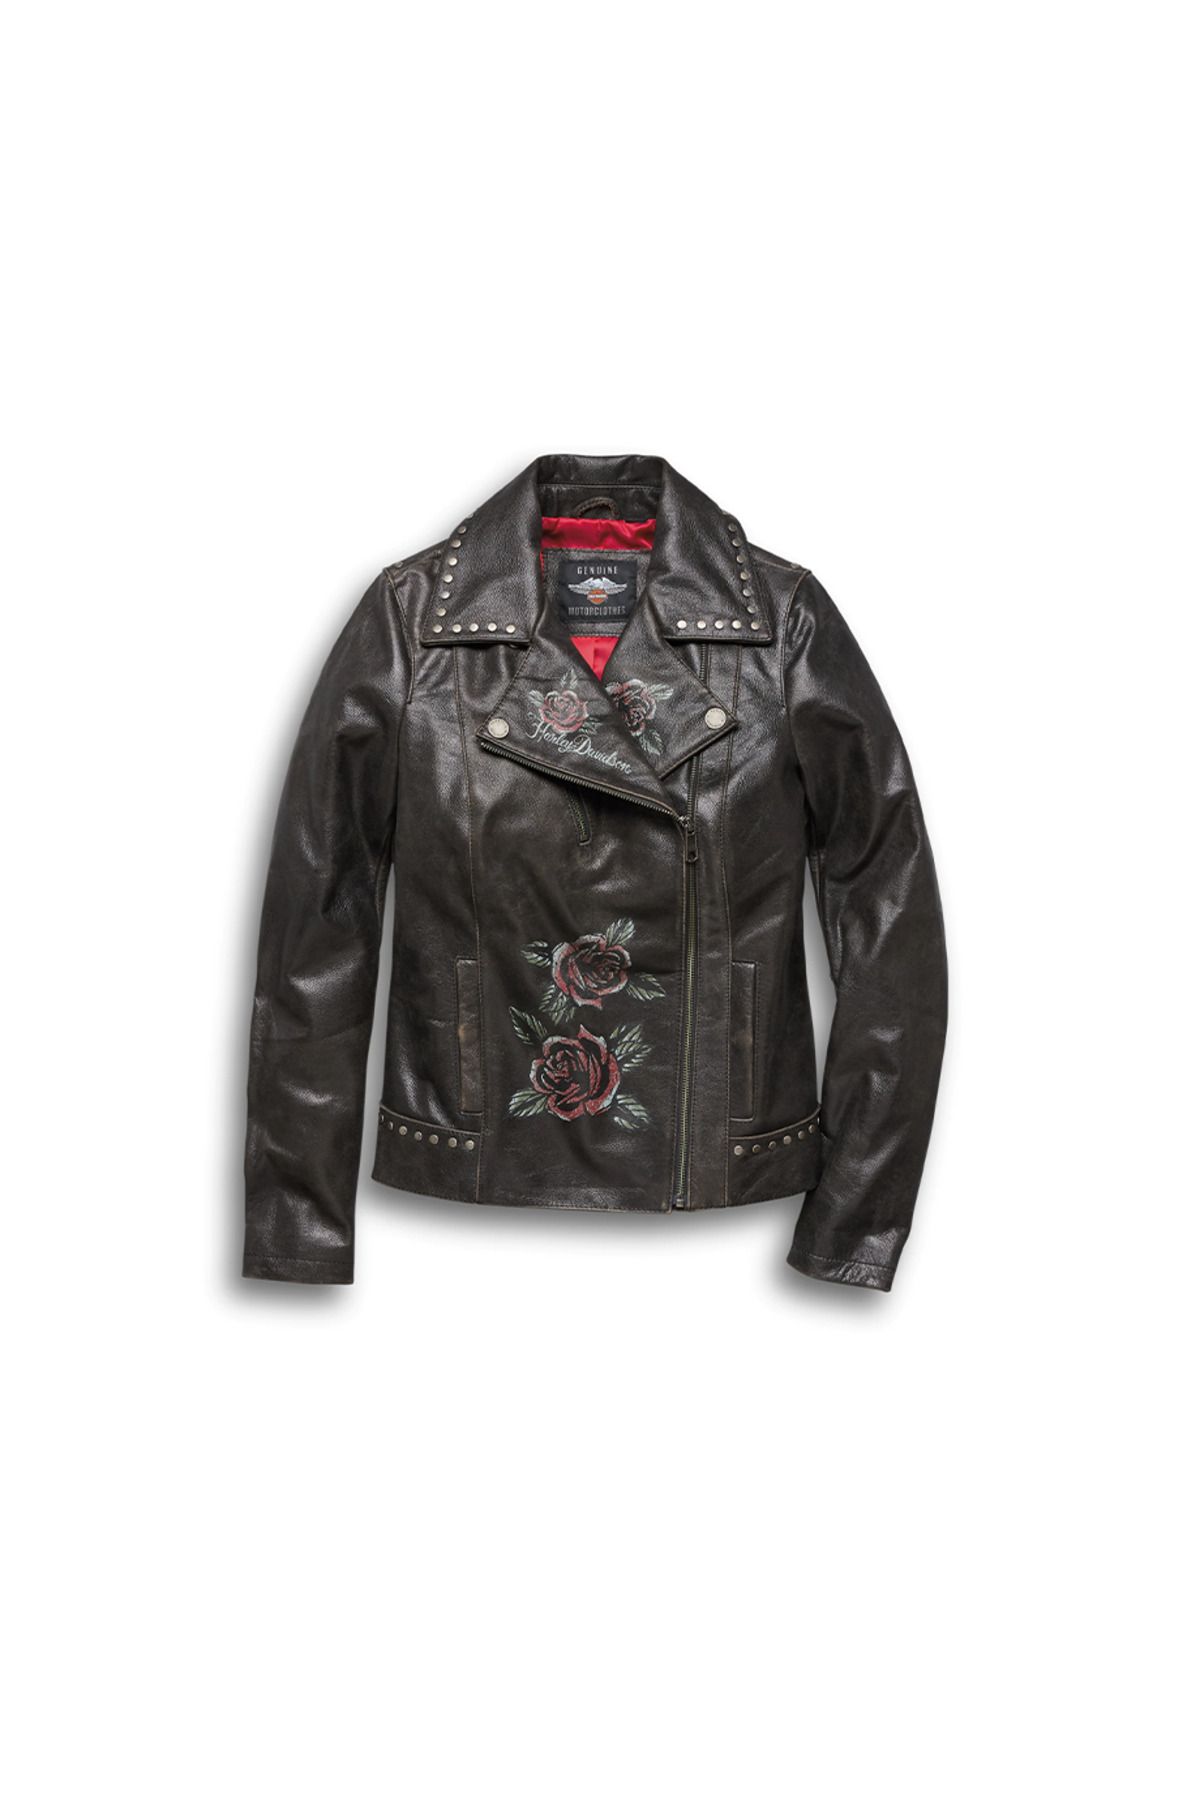 Harley Davidson Harley-davidson Women's Roses & Studs Leather Biker Jacket